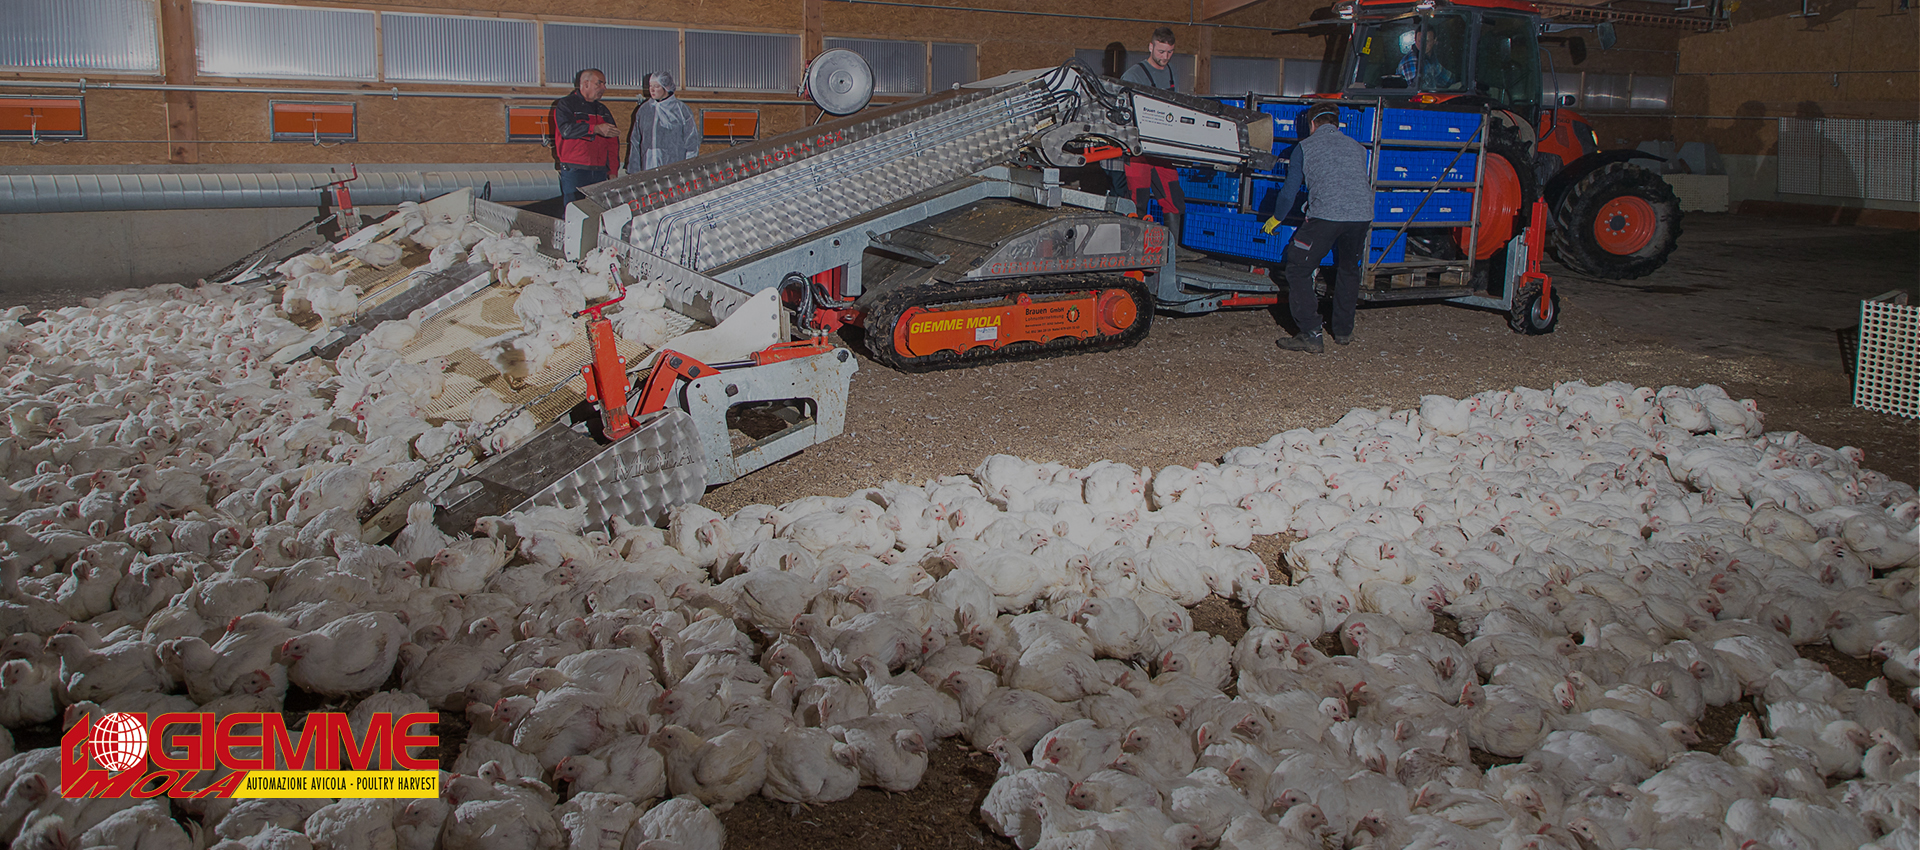 آلات حاصدات الدجاج والدواجن لمزارع الكتاكيت